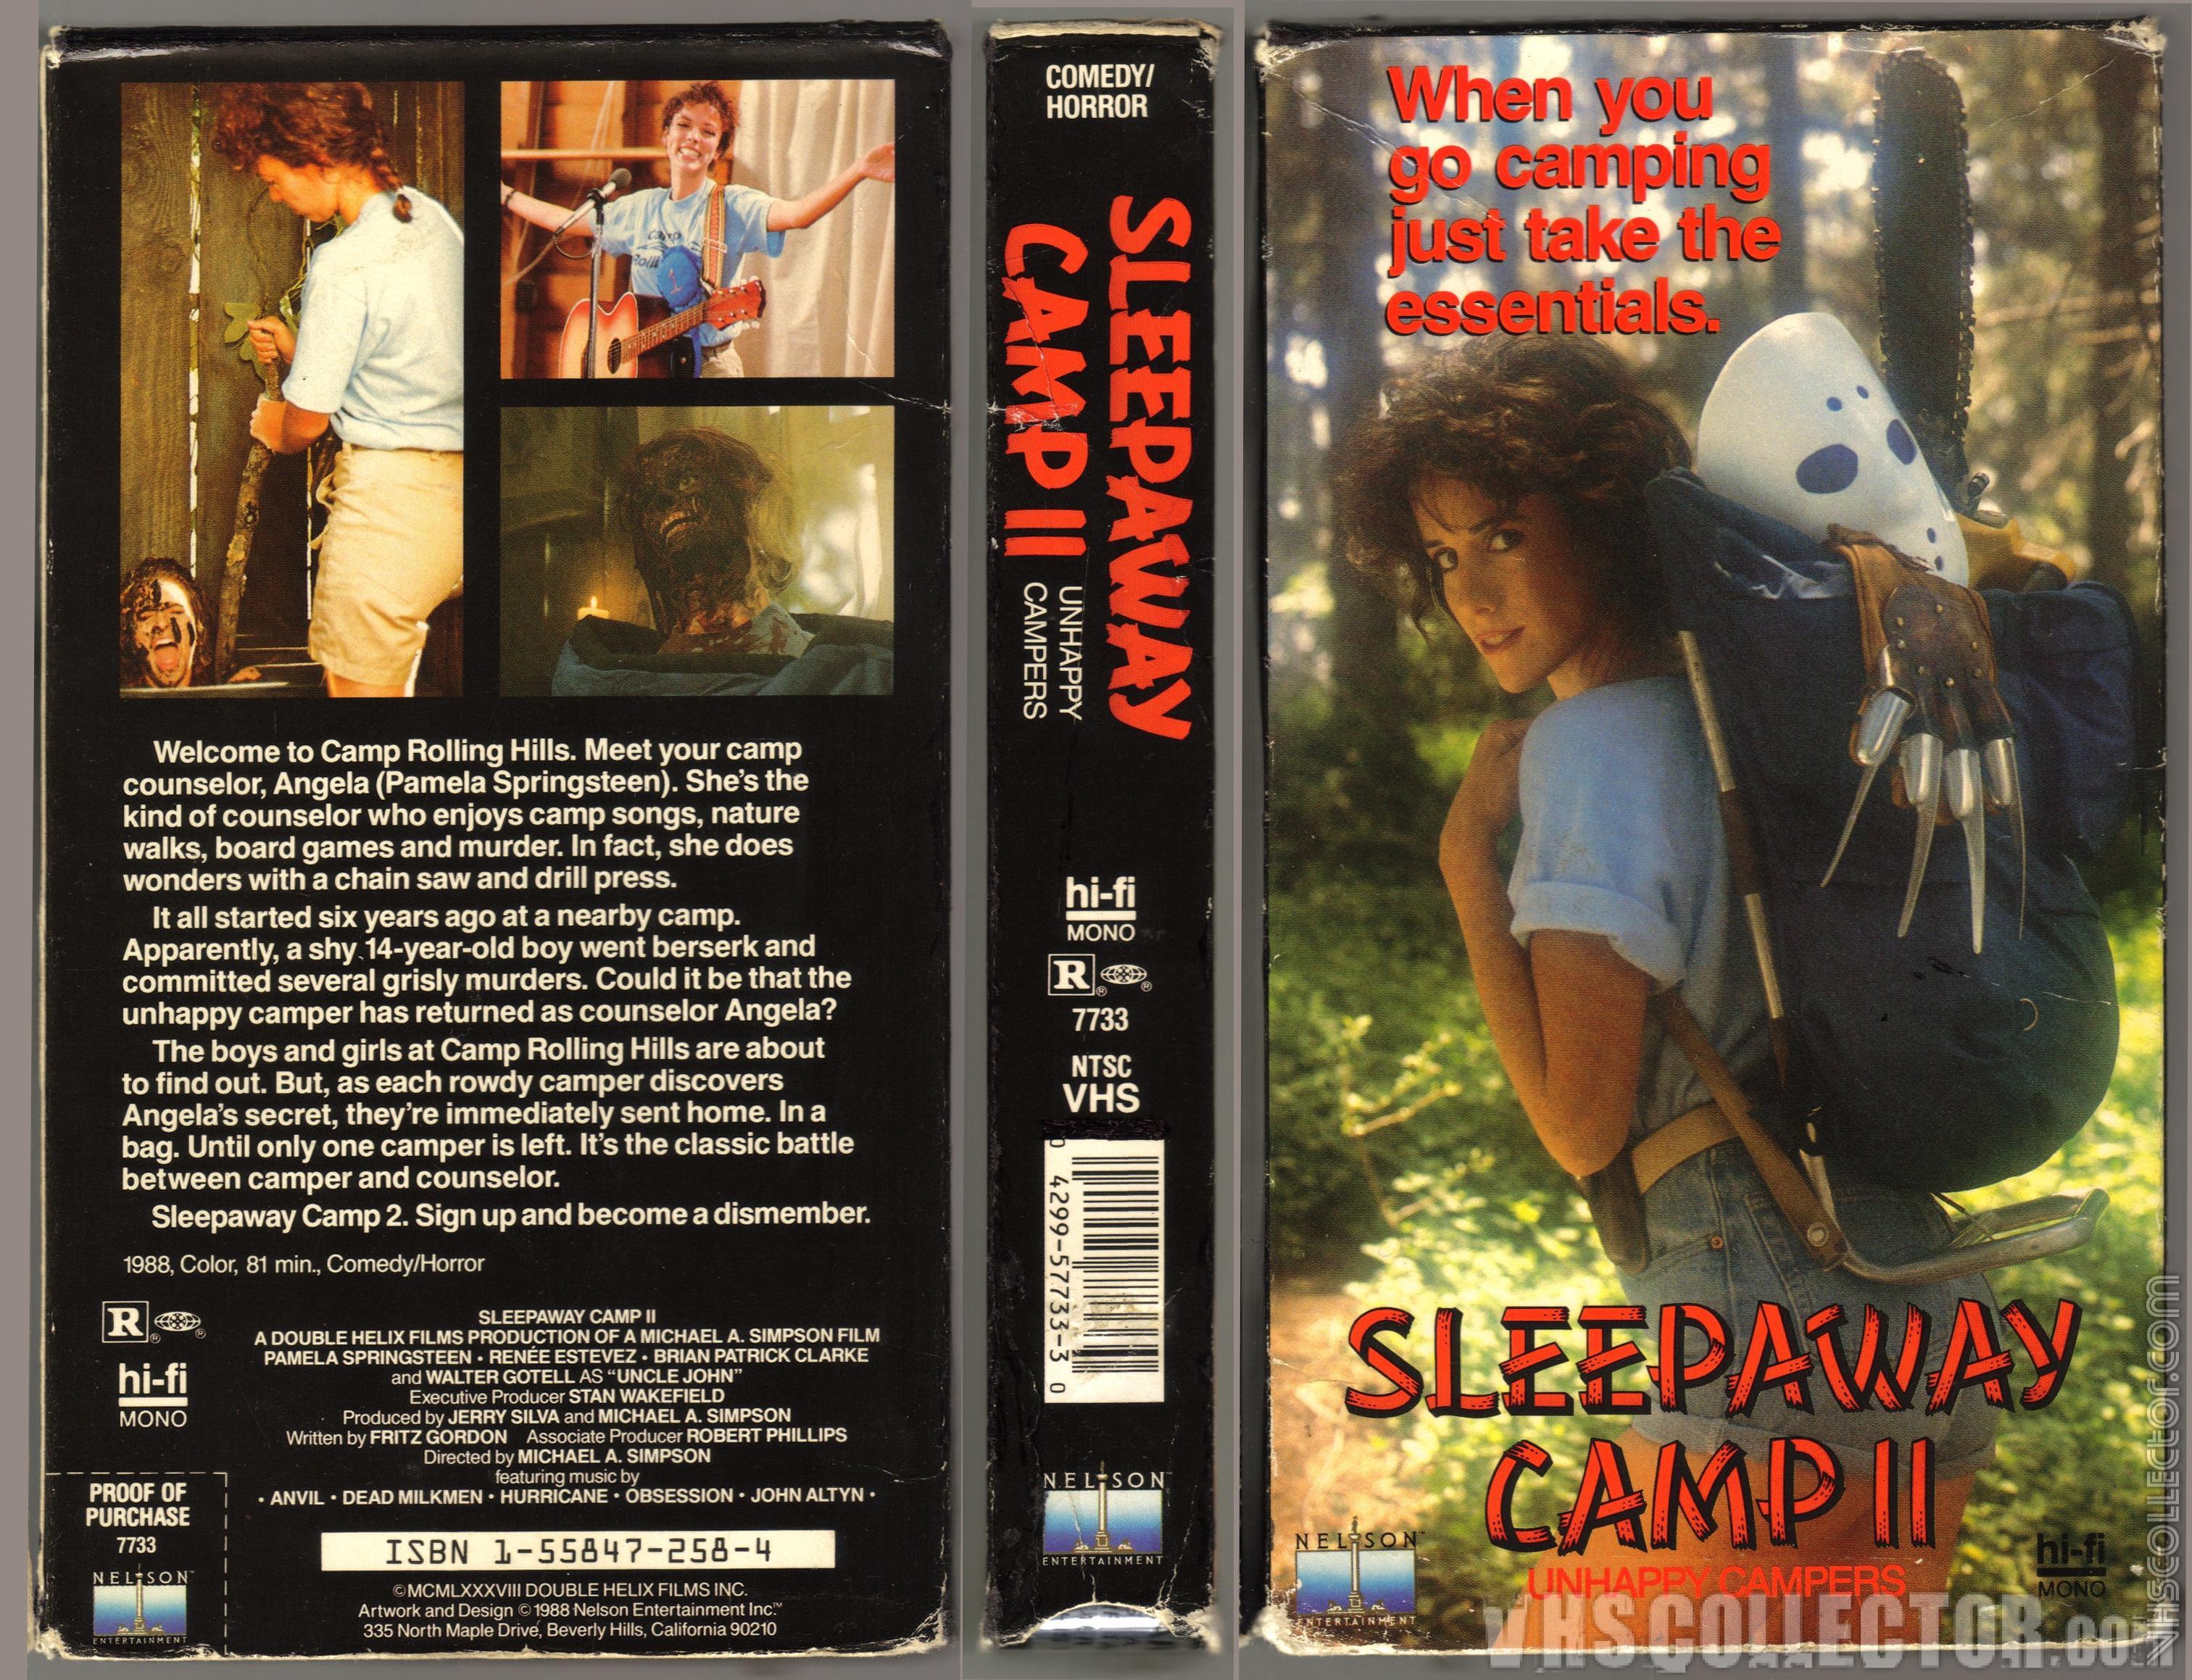 The camp left. Спящий лагерь / Sleepaway Camp (1983).